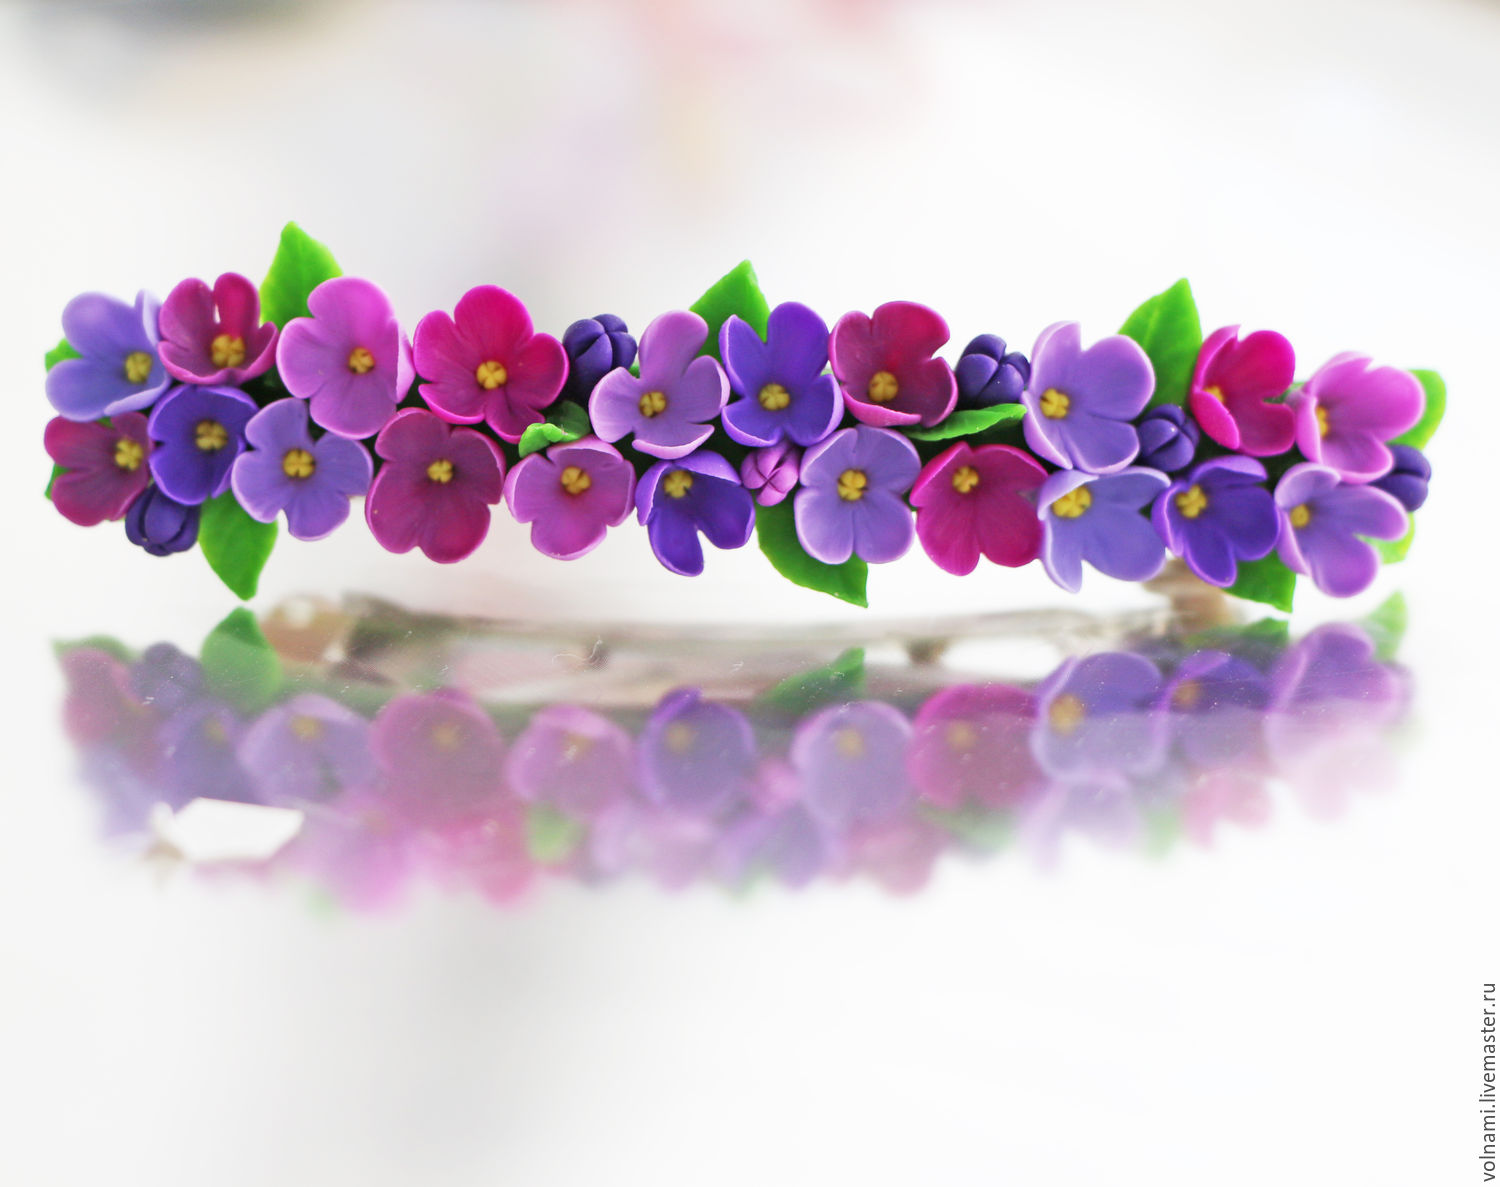 Polymer clay Lilac flowers jewelry